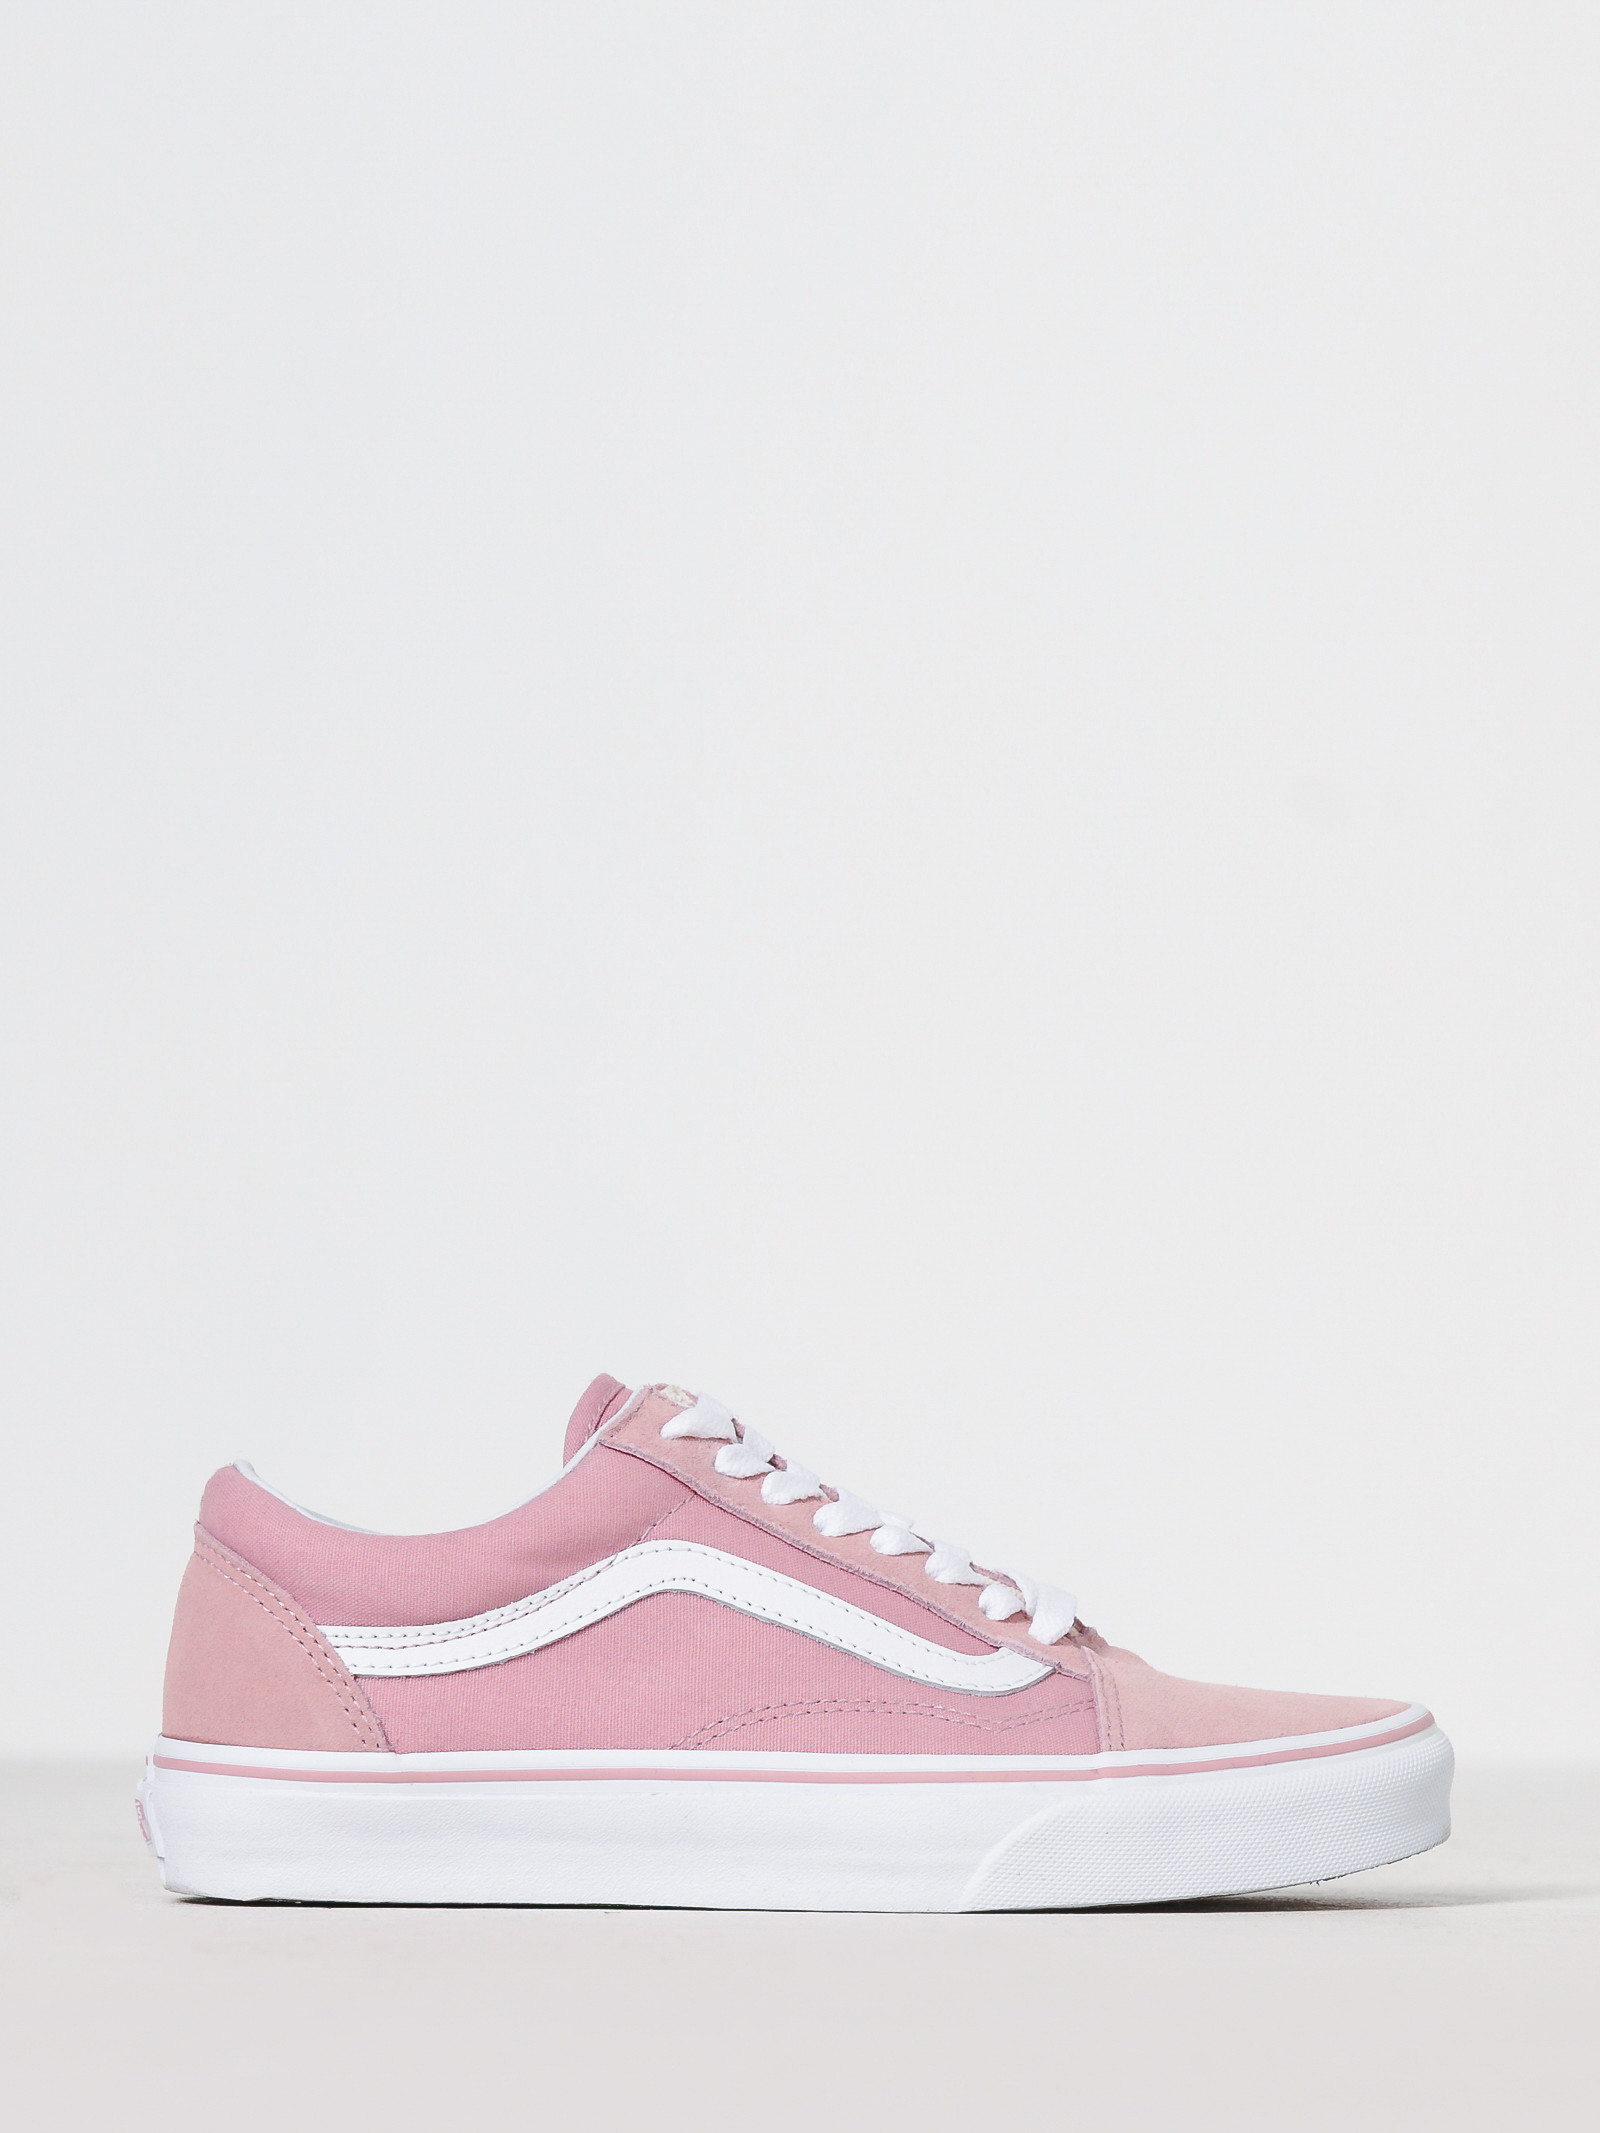 Vans Womens Old Skool Sneakers in White & Zephyr Pink